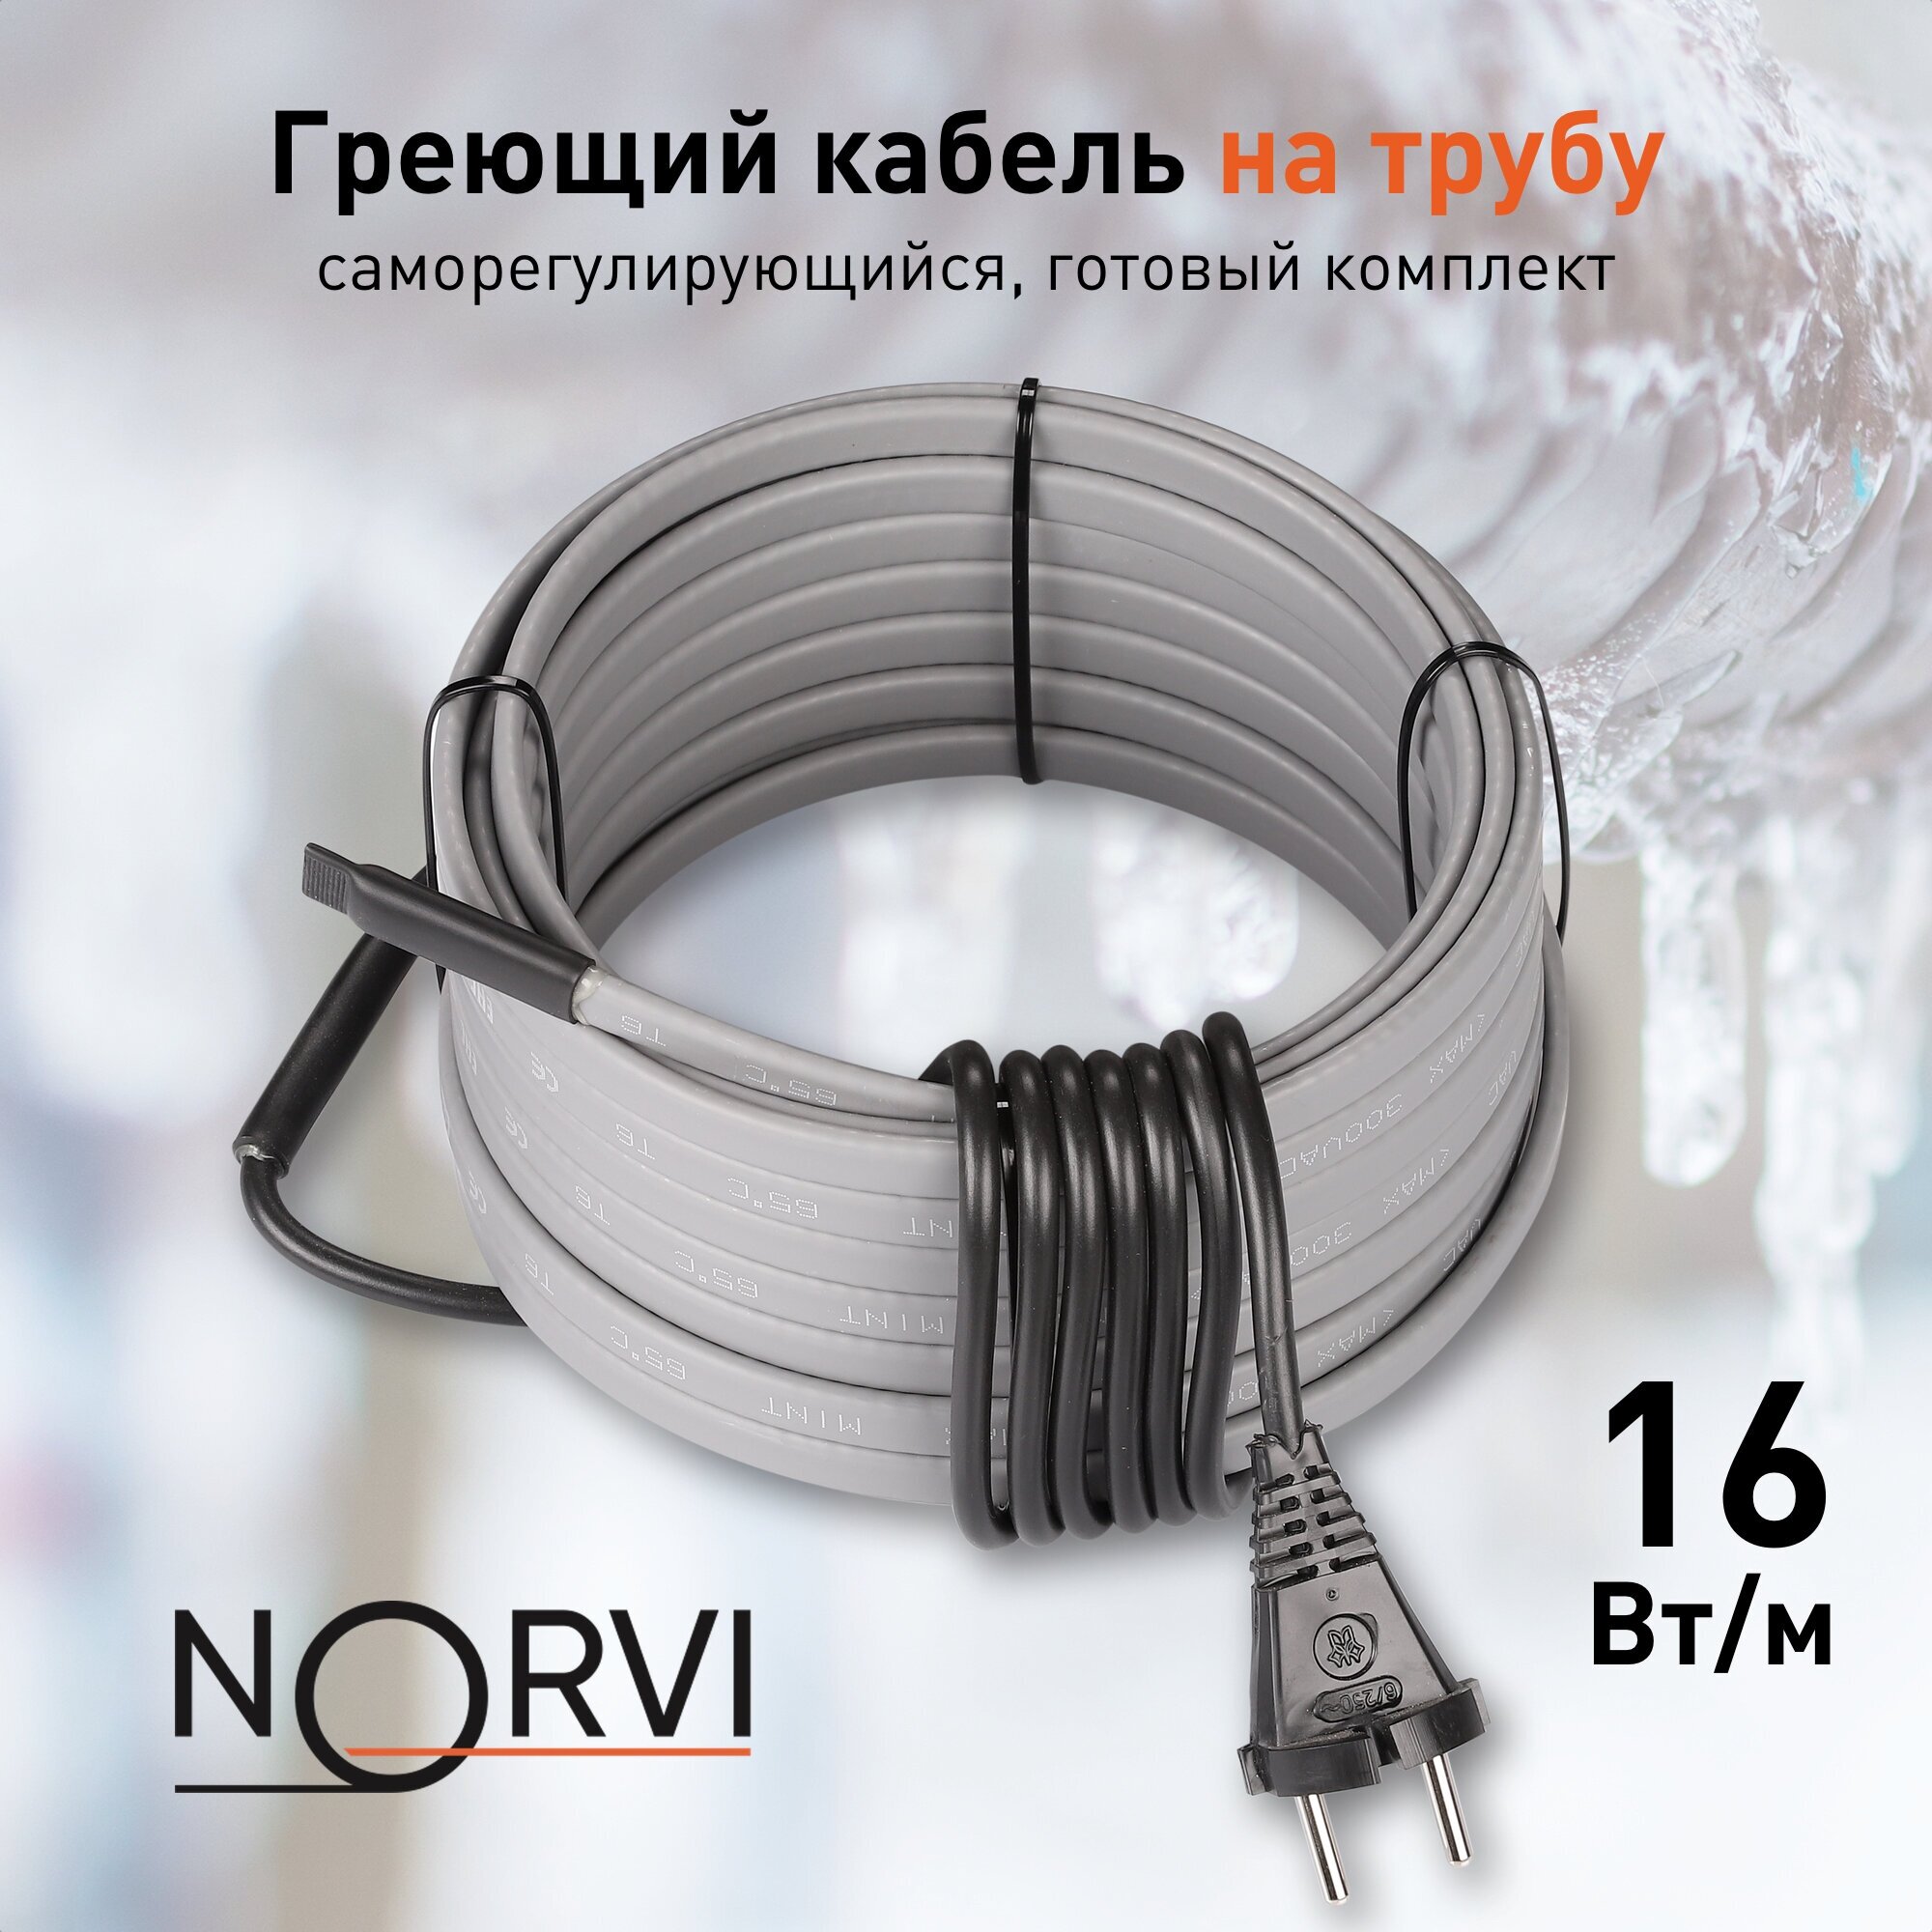 Греющий кабель NORVI ONPIPE, 208 Вт, 13 м, для обогрева труб снаружи - фотография № 1